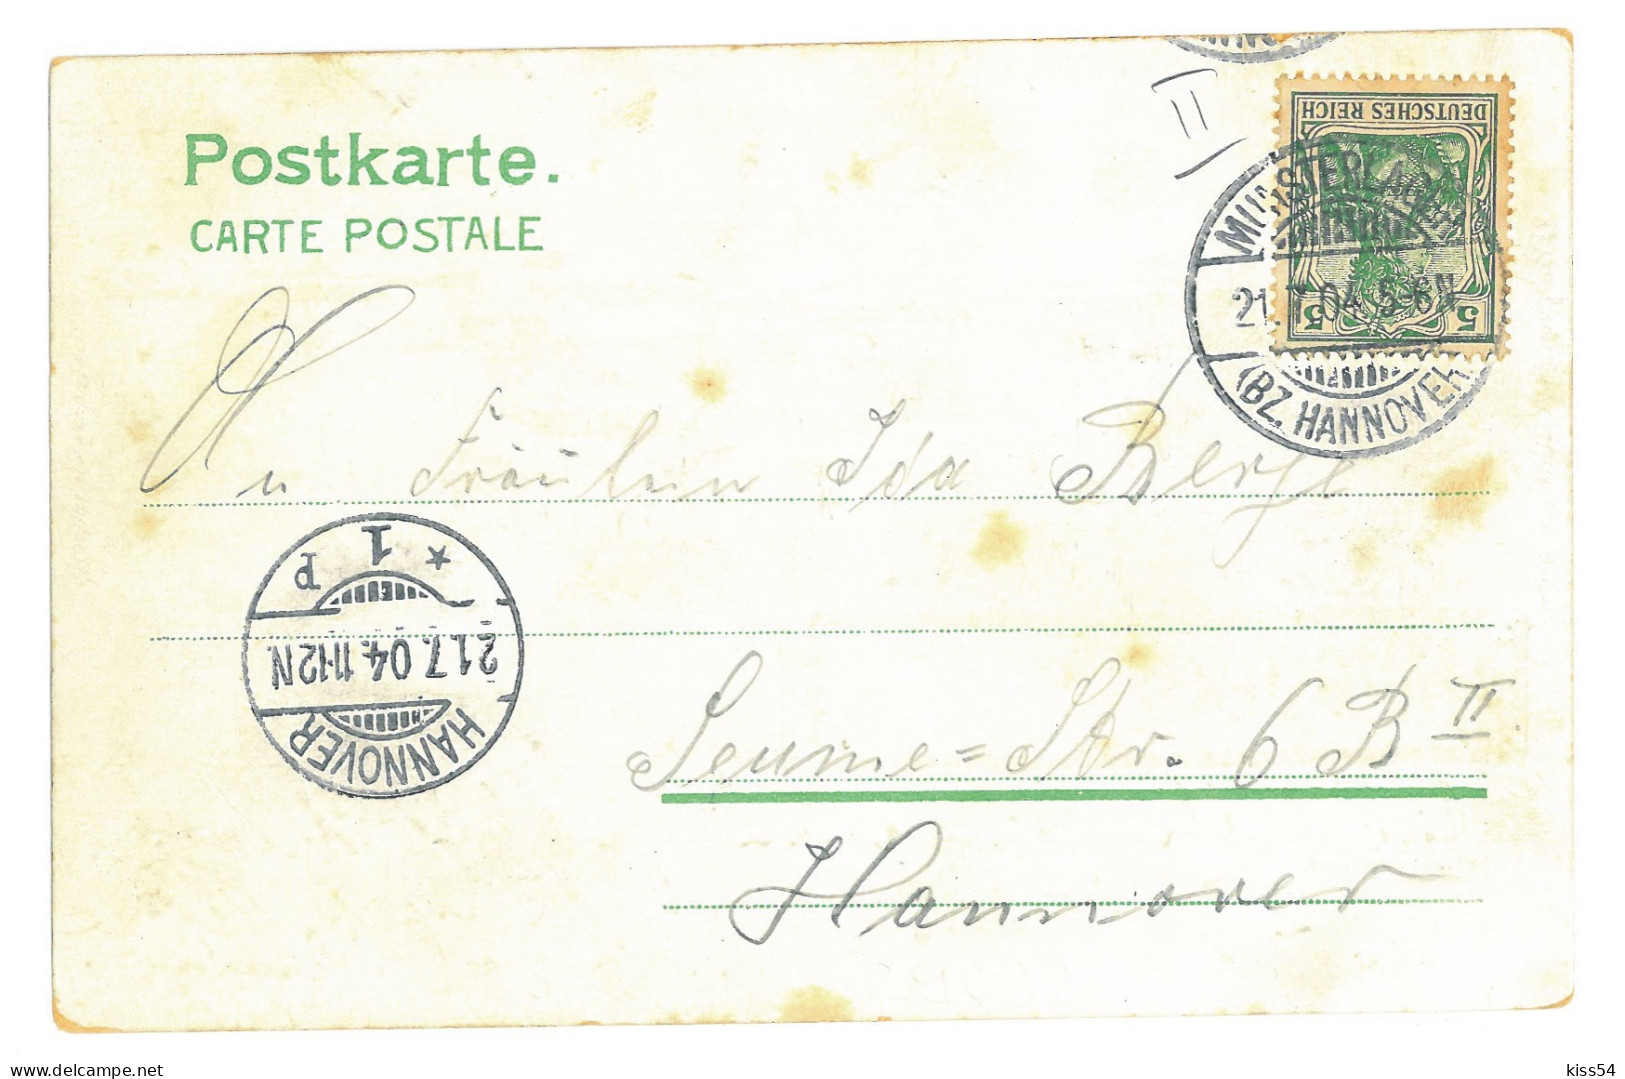 GER 34 - 16992 MUNSTER, Litho, Germany - Old Postcard - Used - 1904 - Munster